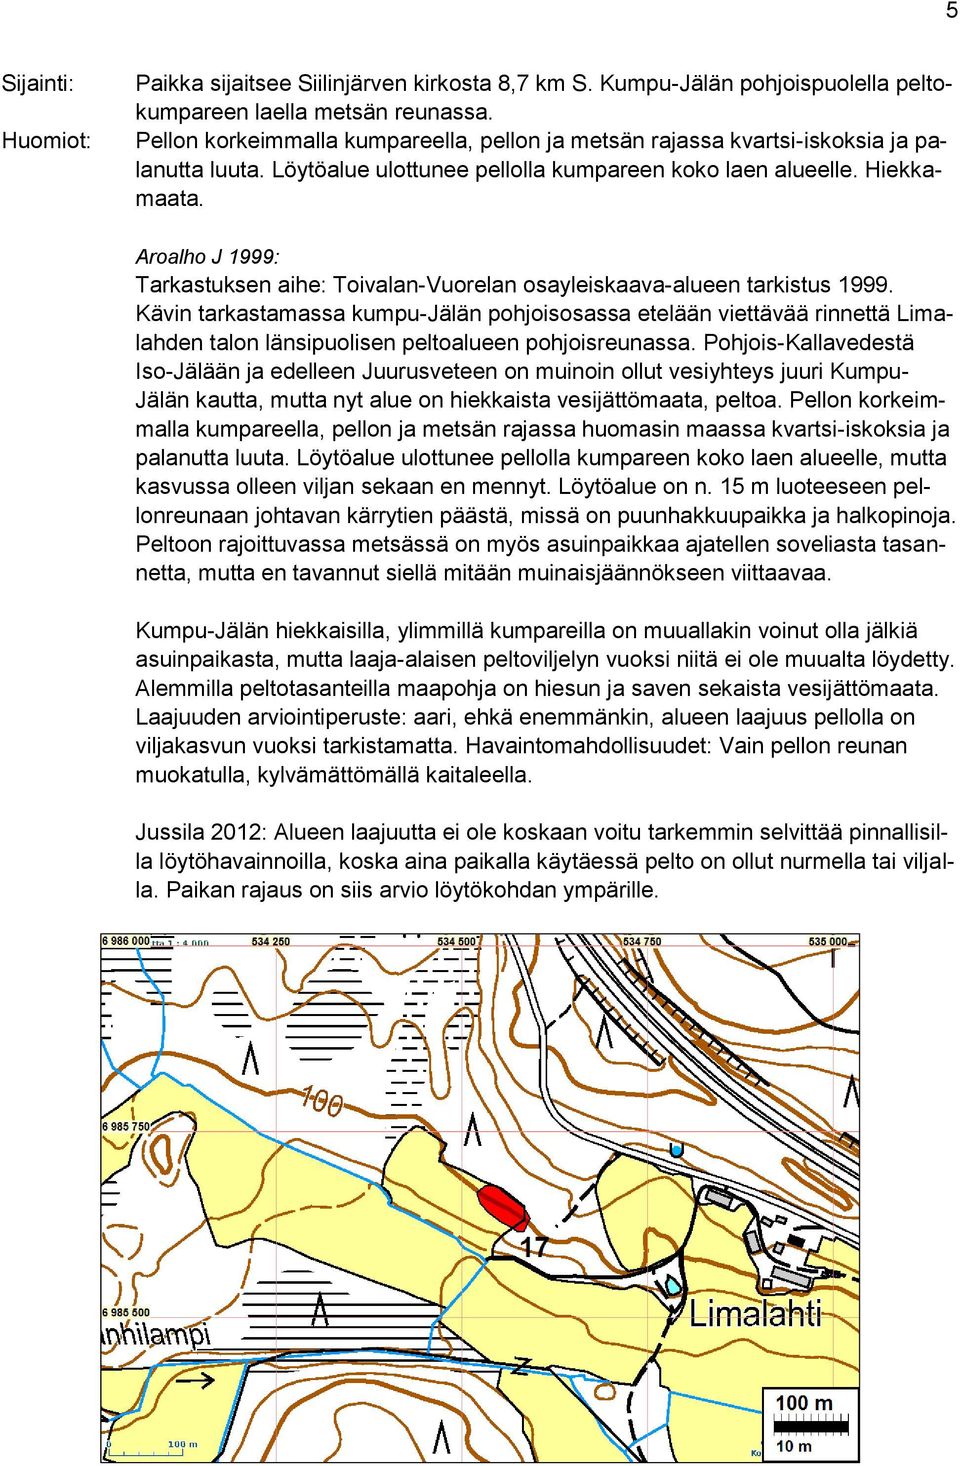 Aroalho J 1999: Tarkastuksen aihe: Toivalan-Vuorelan osayleiskaava-alueen tarkistus 1999.